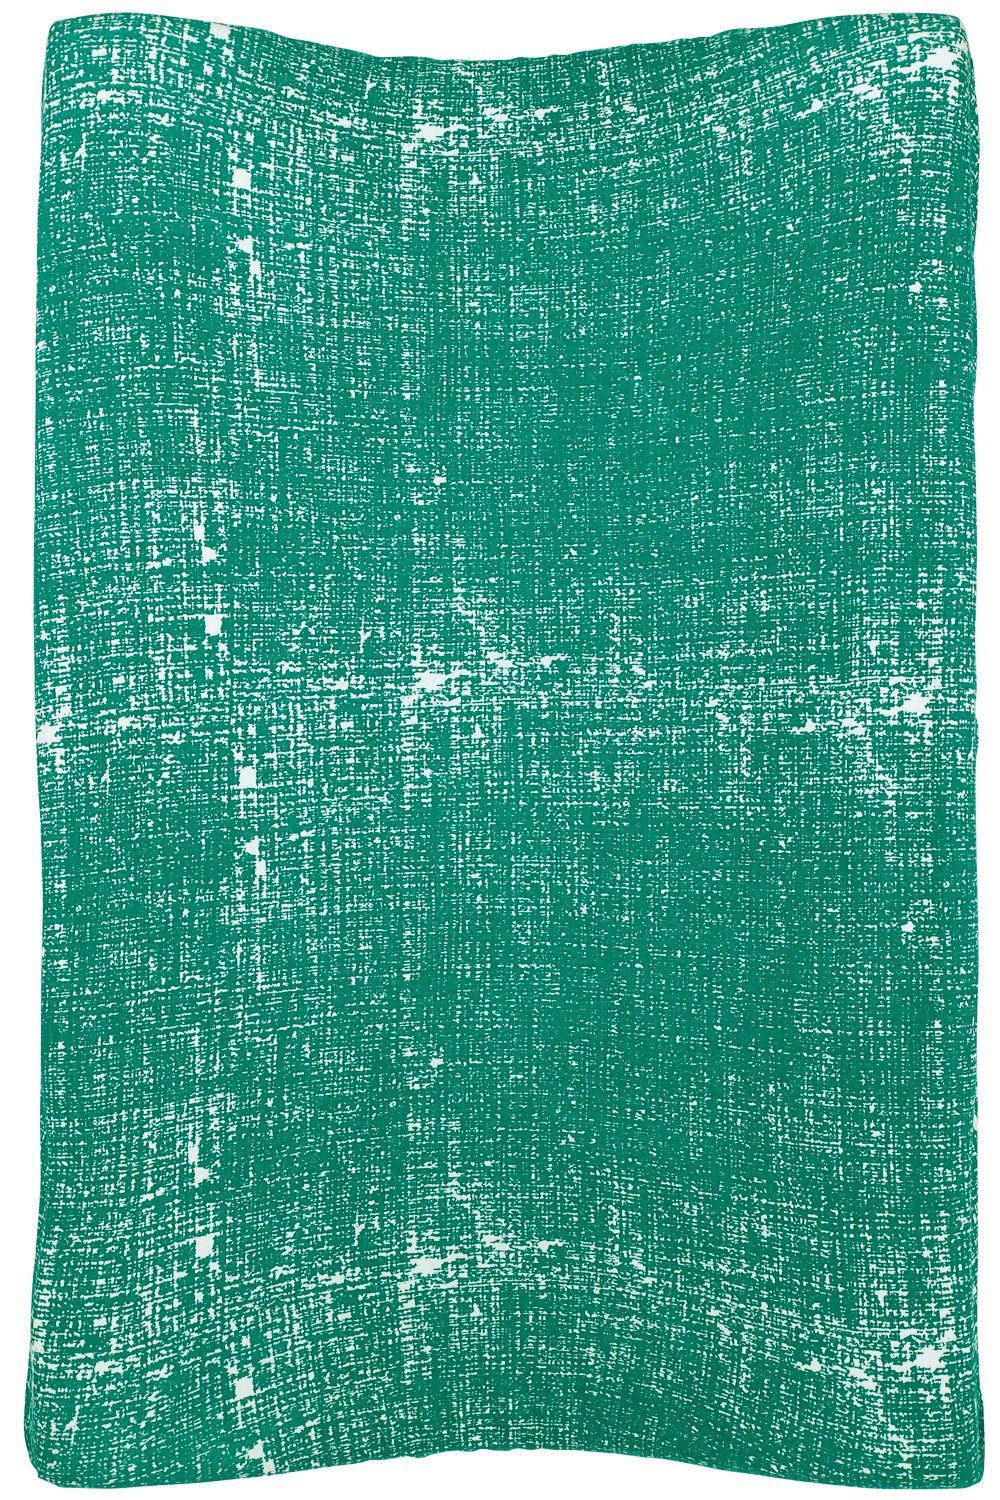 Baby (1-tlg), Green Fine 50x70cm Wickelauflagenbezug Lines Meyco Emerald